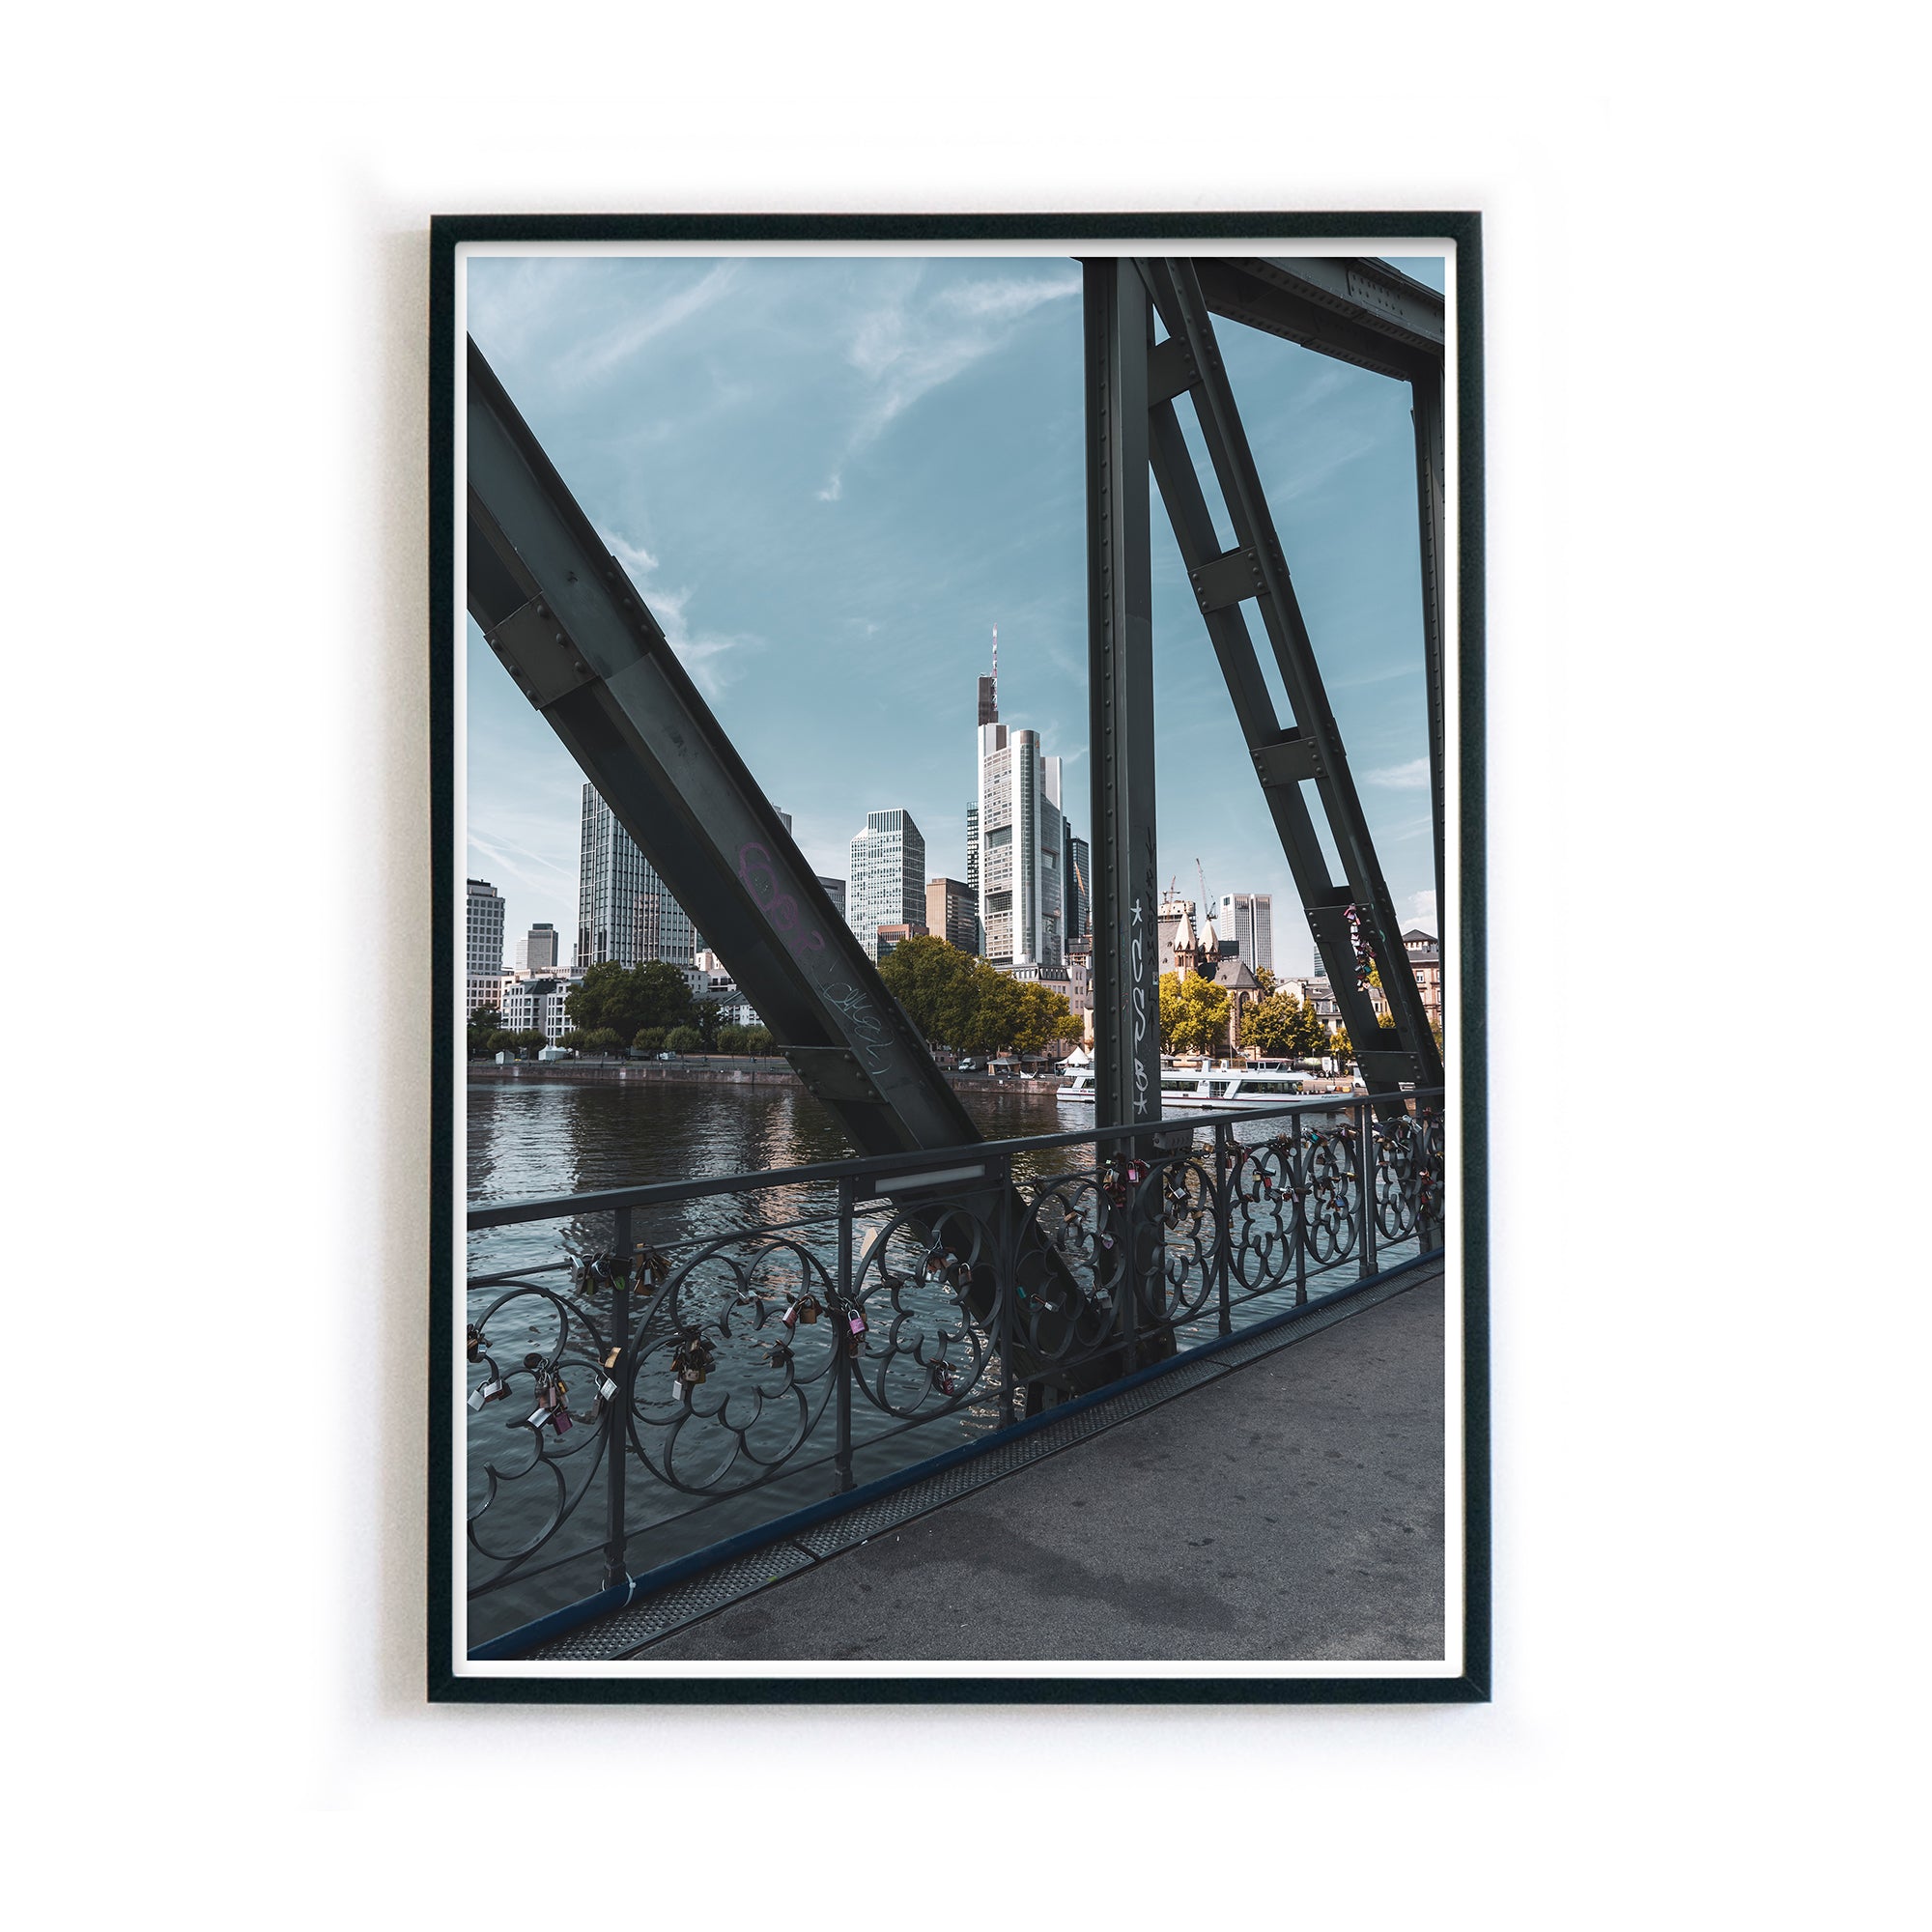 4one-pictures-frankfurt-am-main-poster-skyline-bild-ffm-kunstdruck-bilderrahmen-5mm.jpg